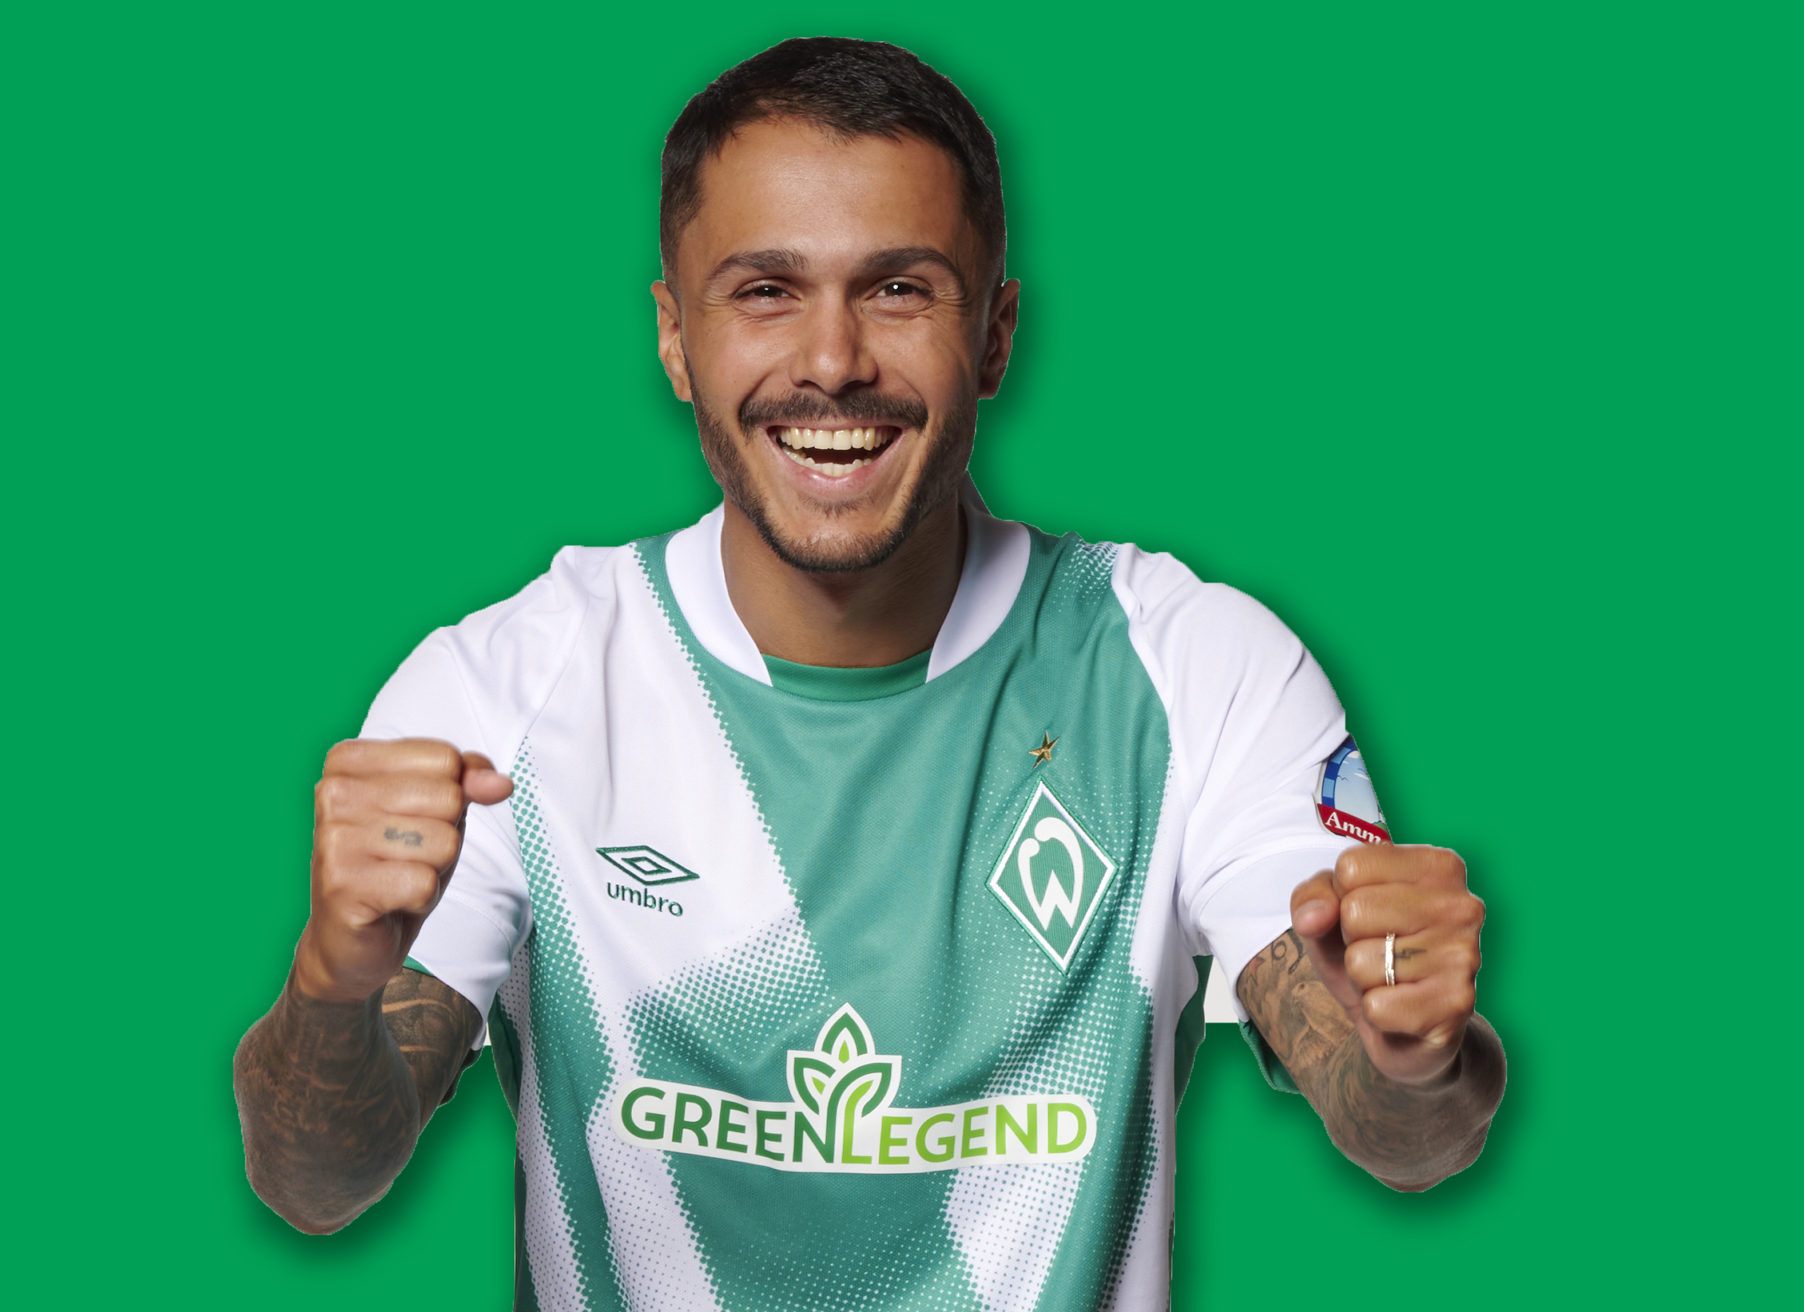 Werder trägt jetzt grüne Legenden auf der Brust: Die vegane Produkt-Marke Green Legend kommt auf das Heimtrikot